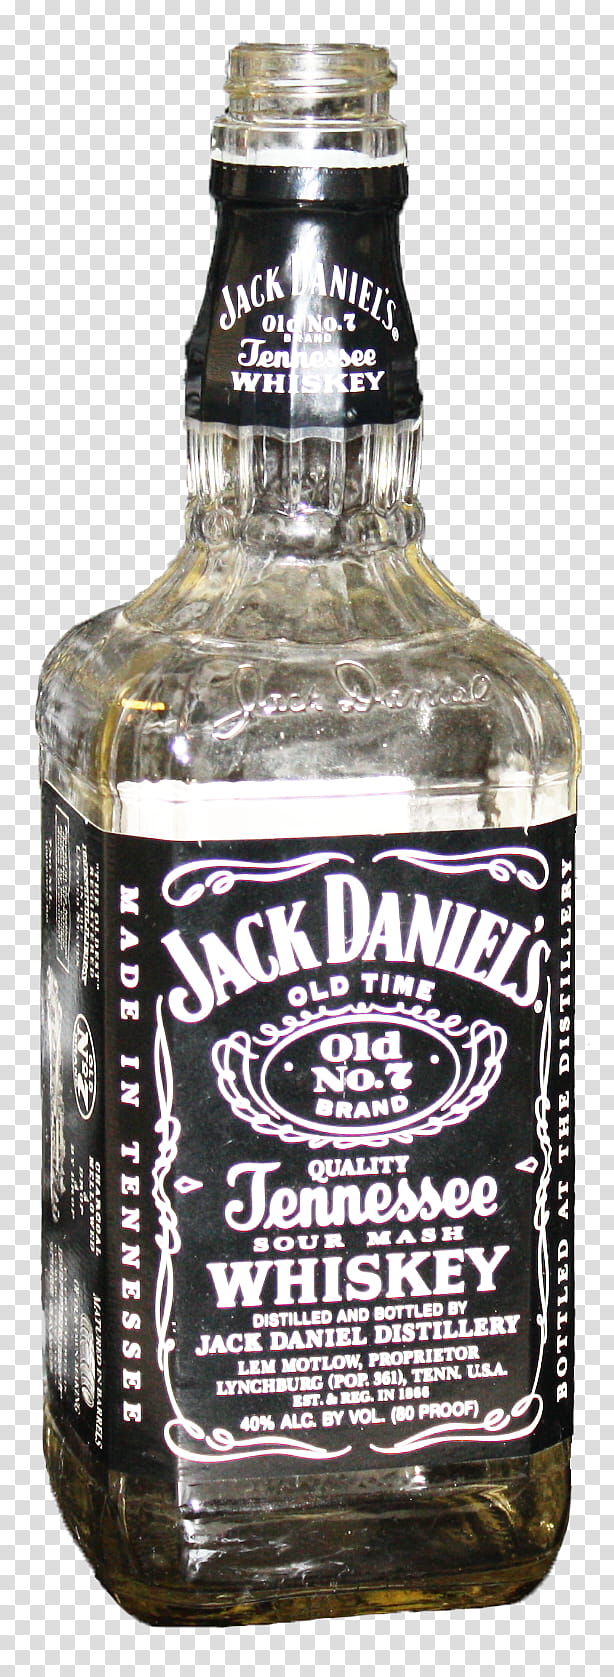 Jack Daniel Bottles transparent background PNG clipart